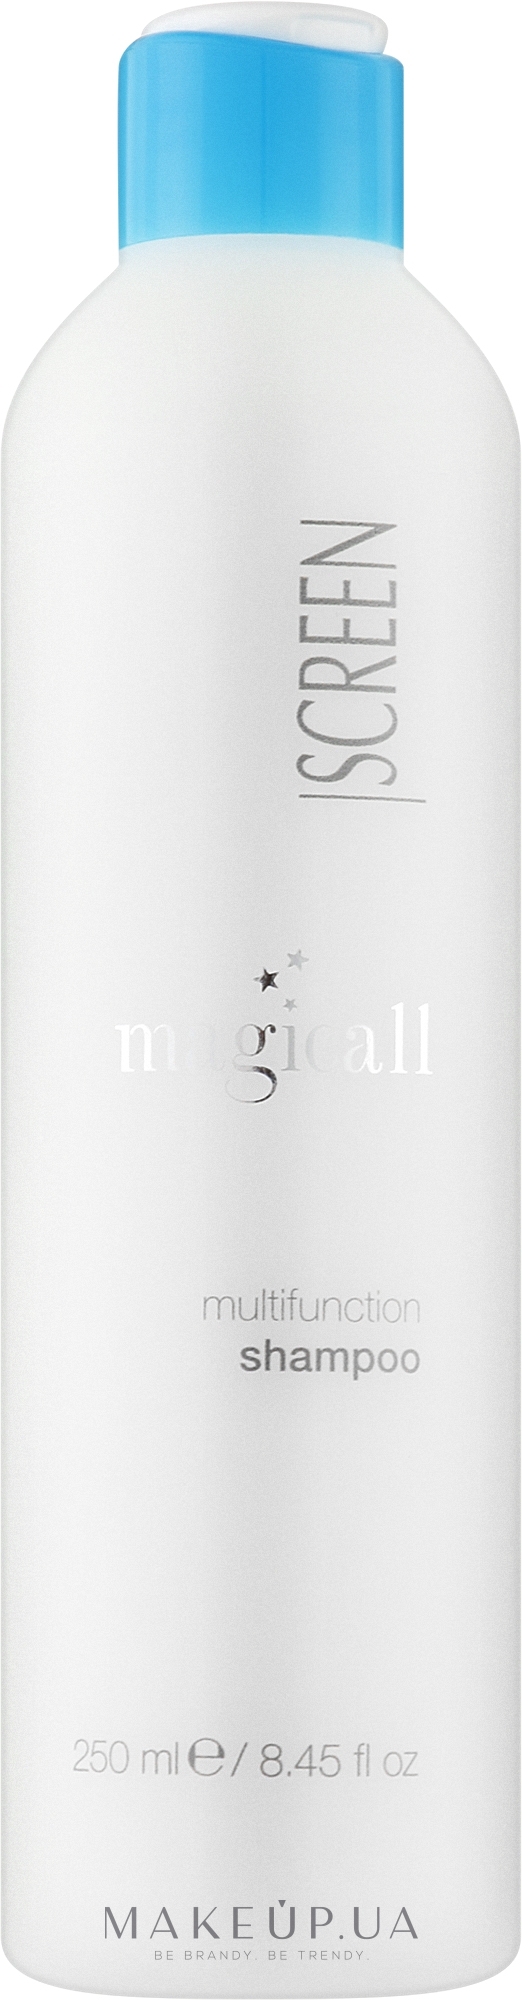 Многофункциональный шампунь для волос - Screen Magicall Multifunction Shampoo — фото 250ml